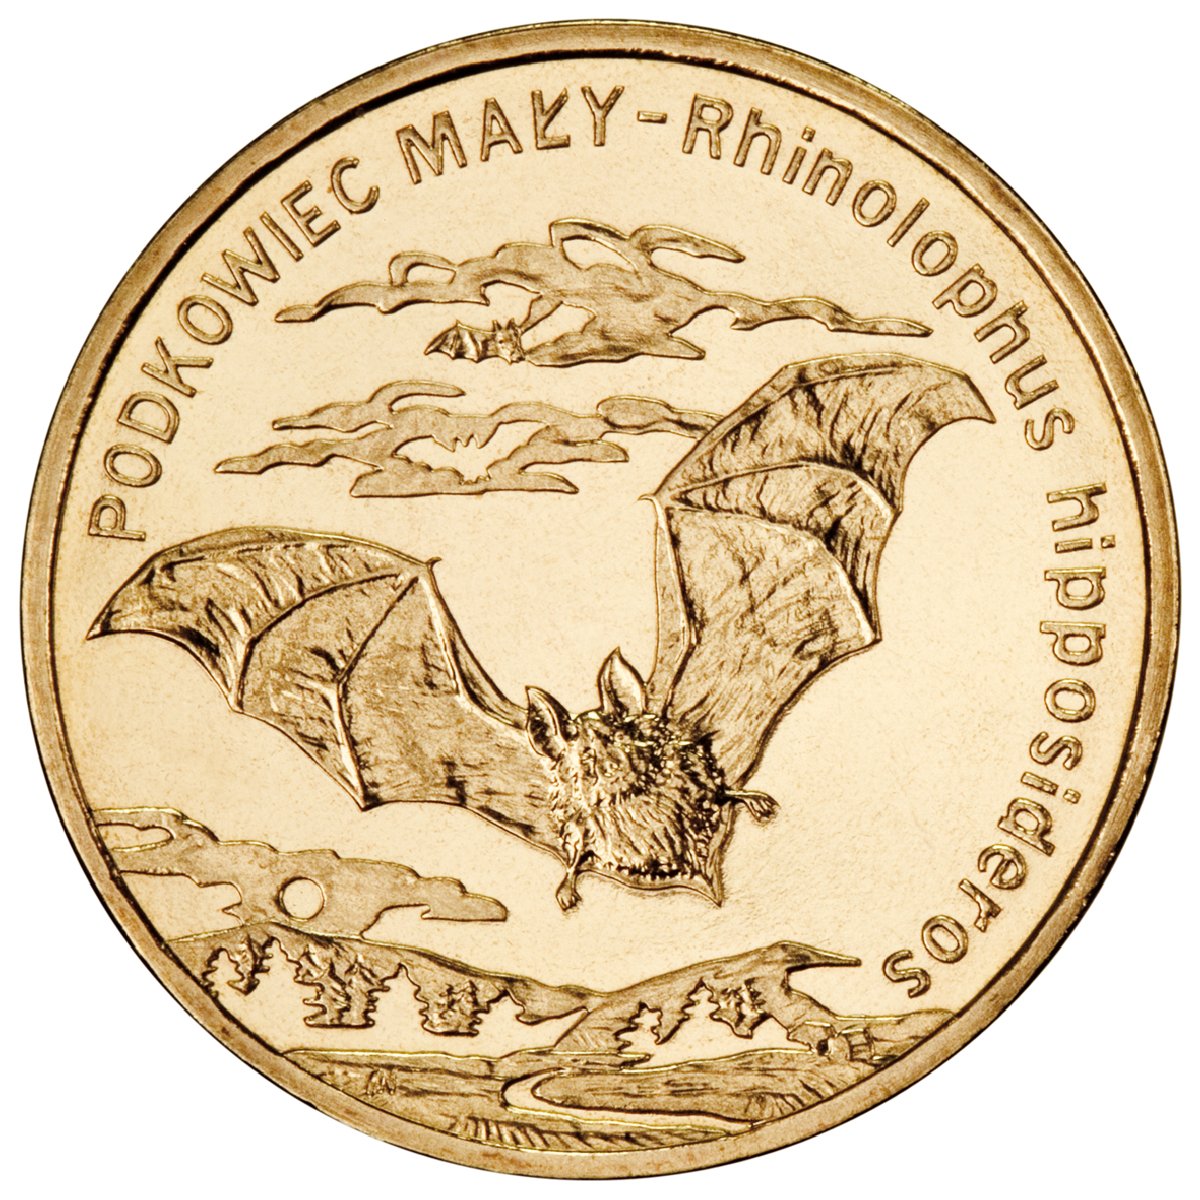 2zl-podkowiec-maly-lac-rhinolophus-hipposideros-rewers-monety